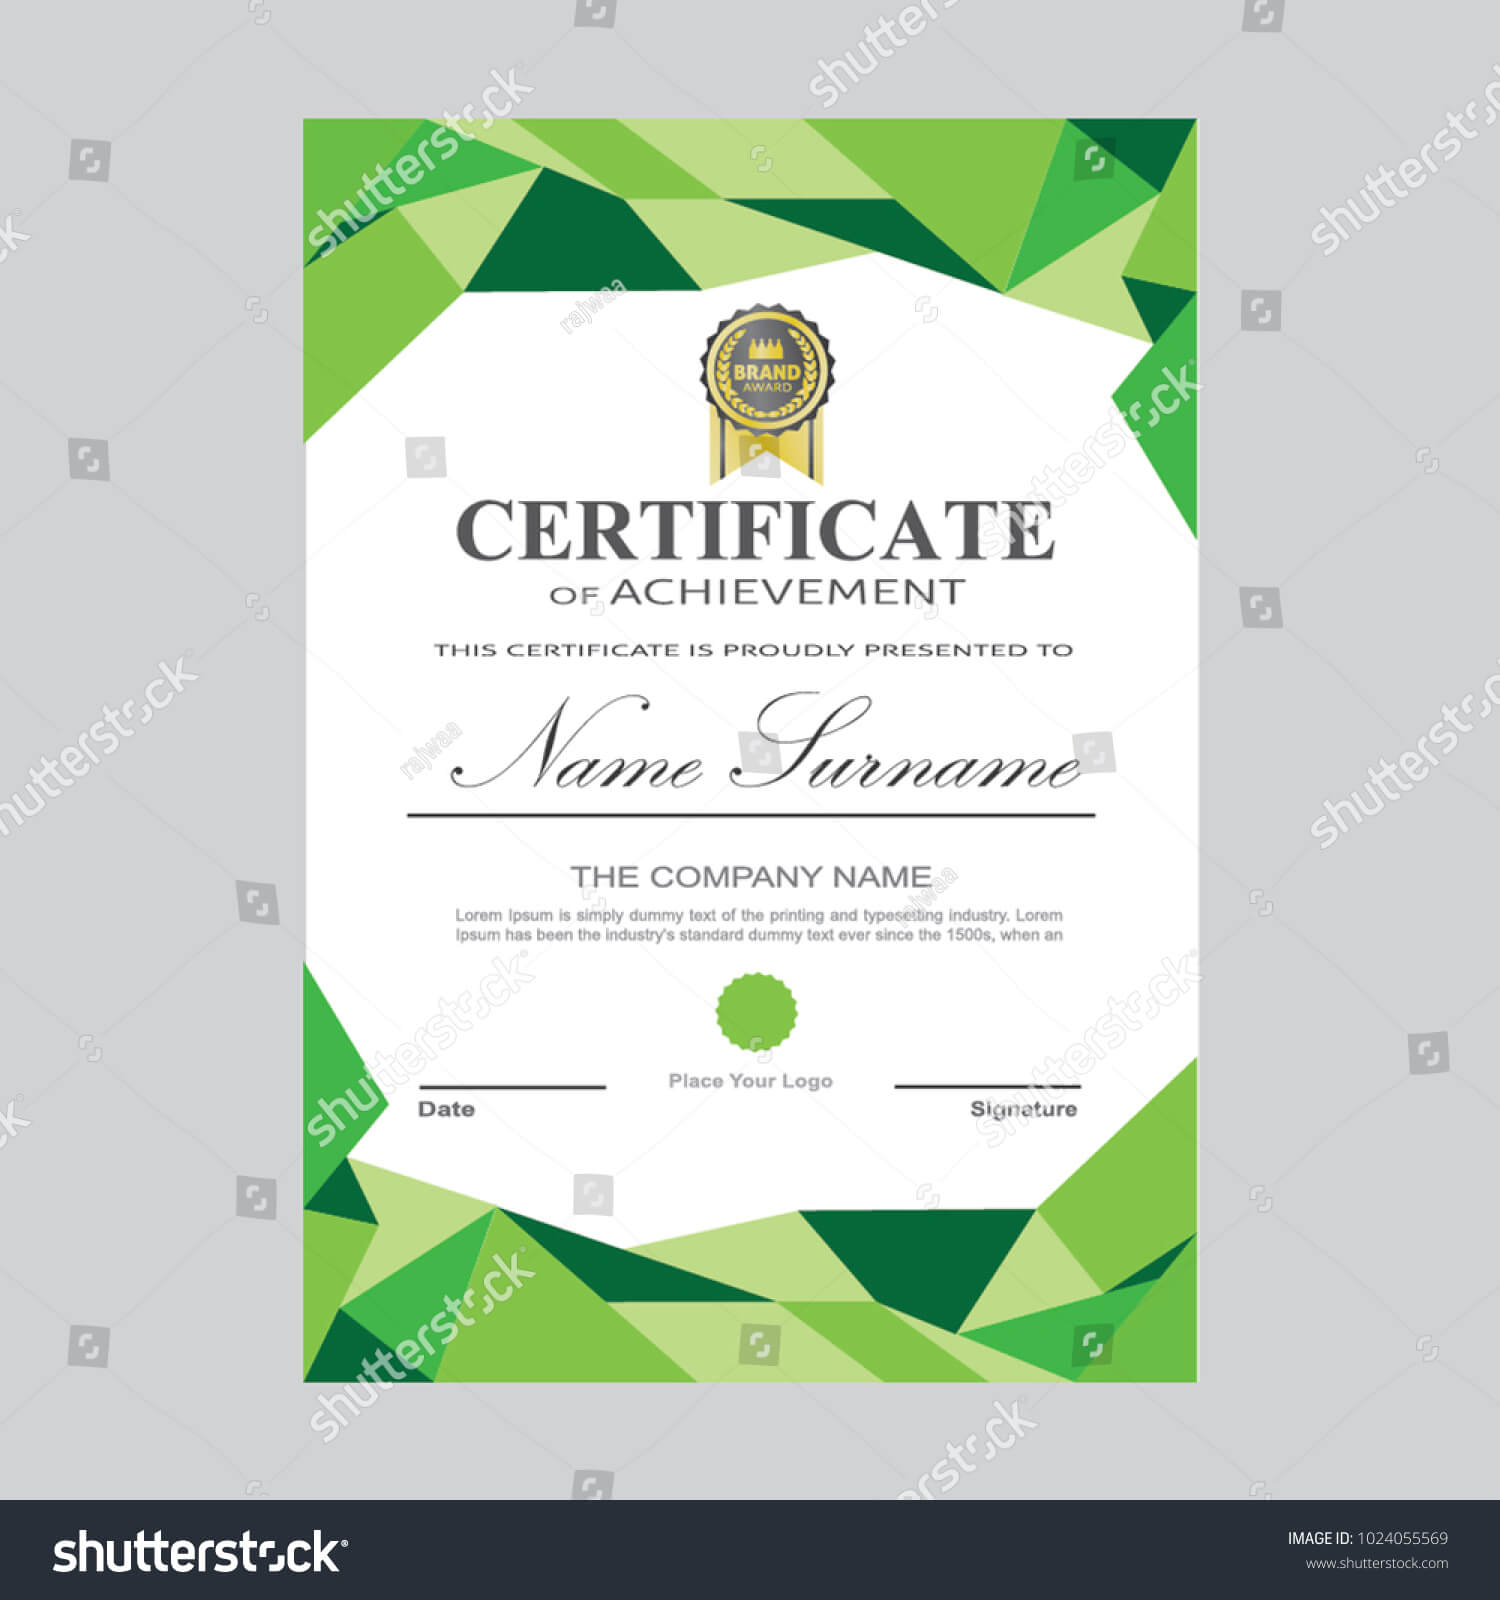 Certificate Template Modern A4 Horizontal Landscape Stock In Landscape Certificate Templates